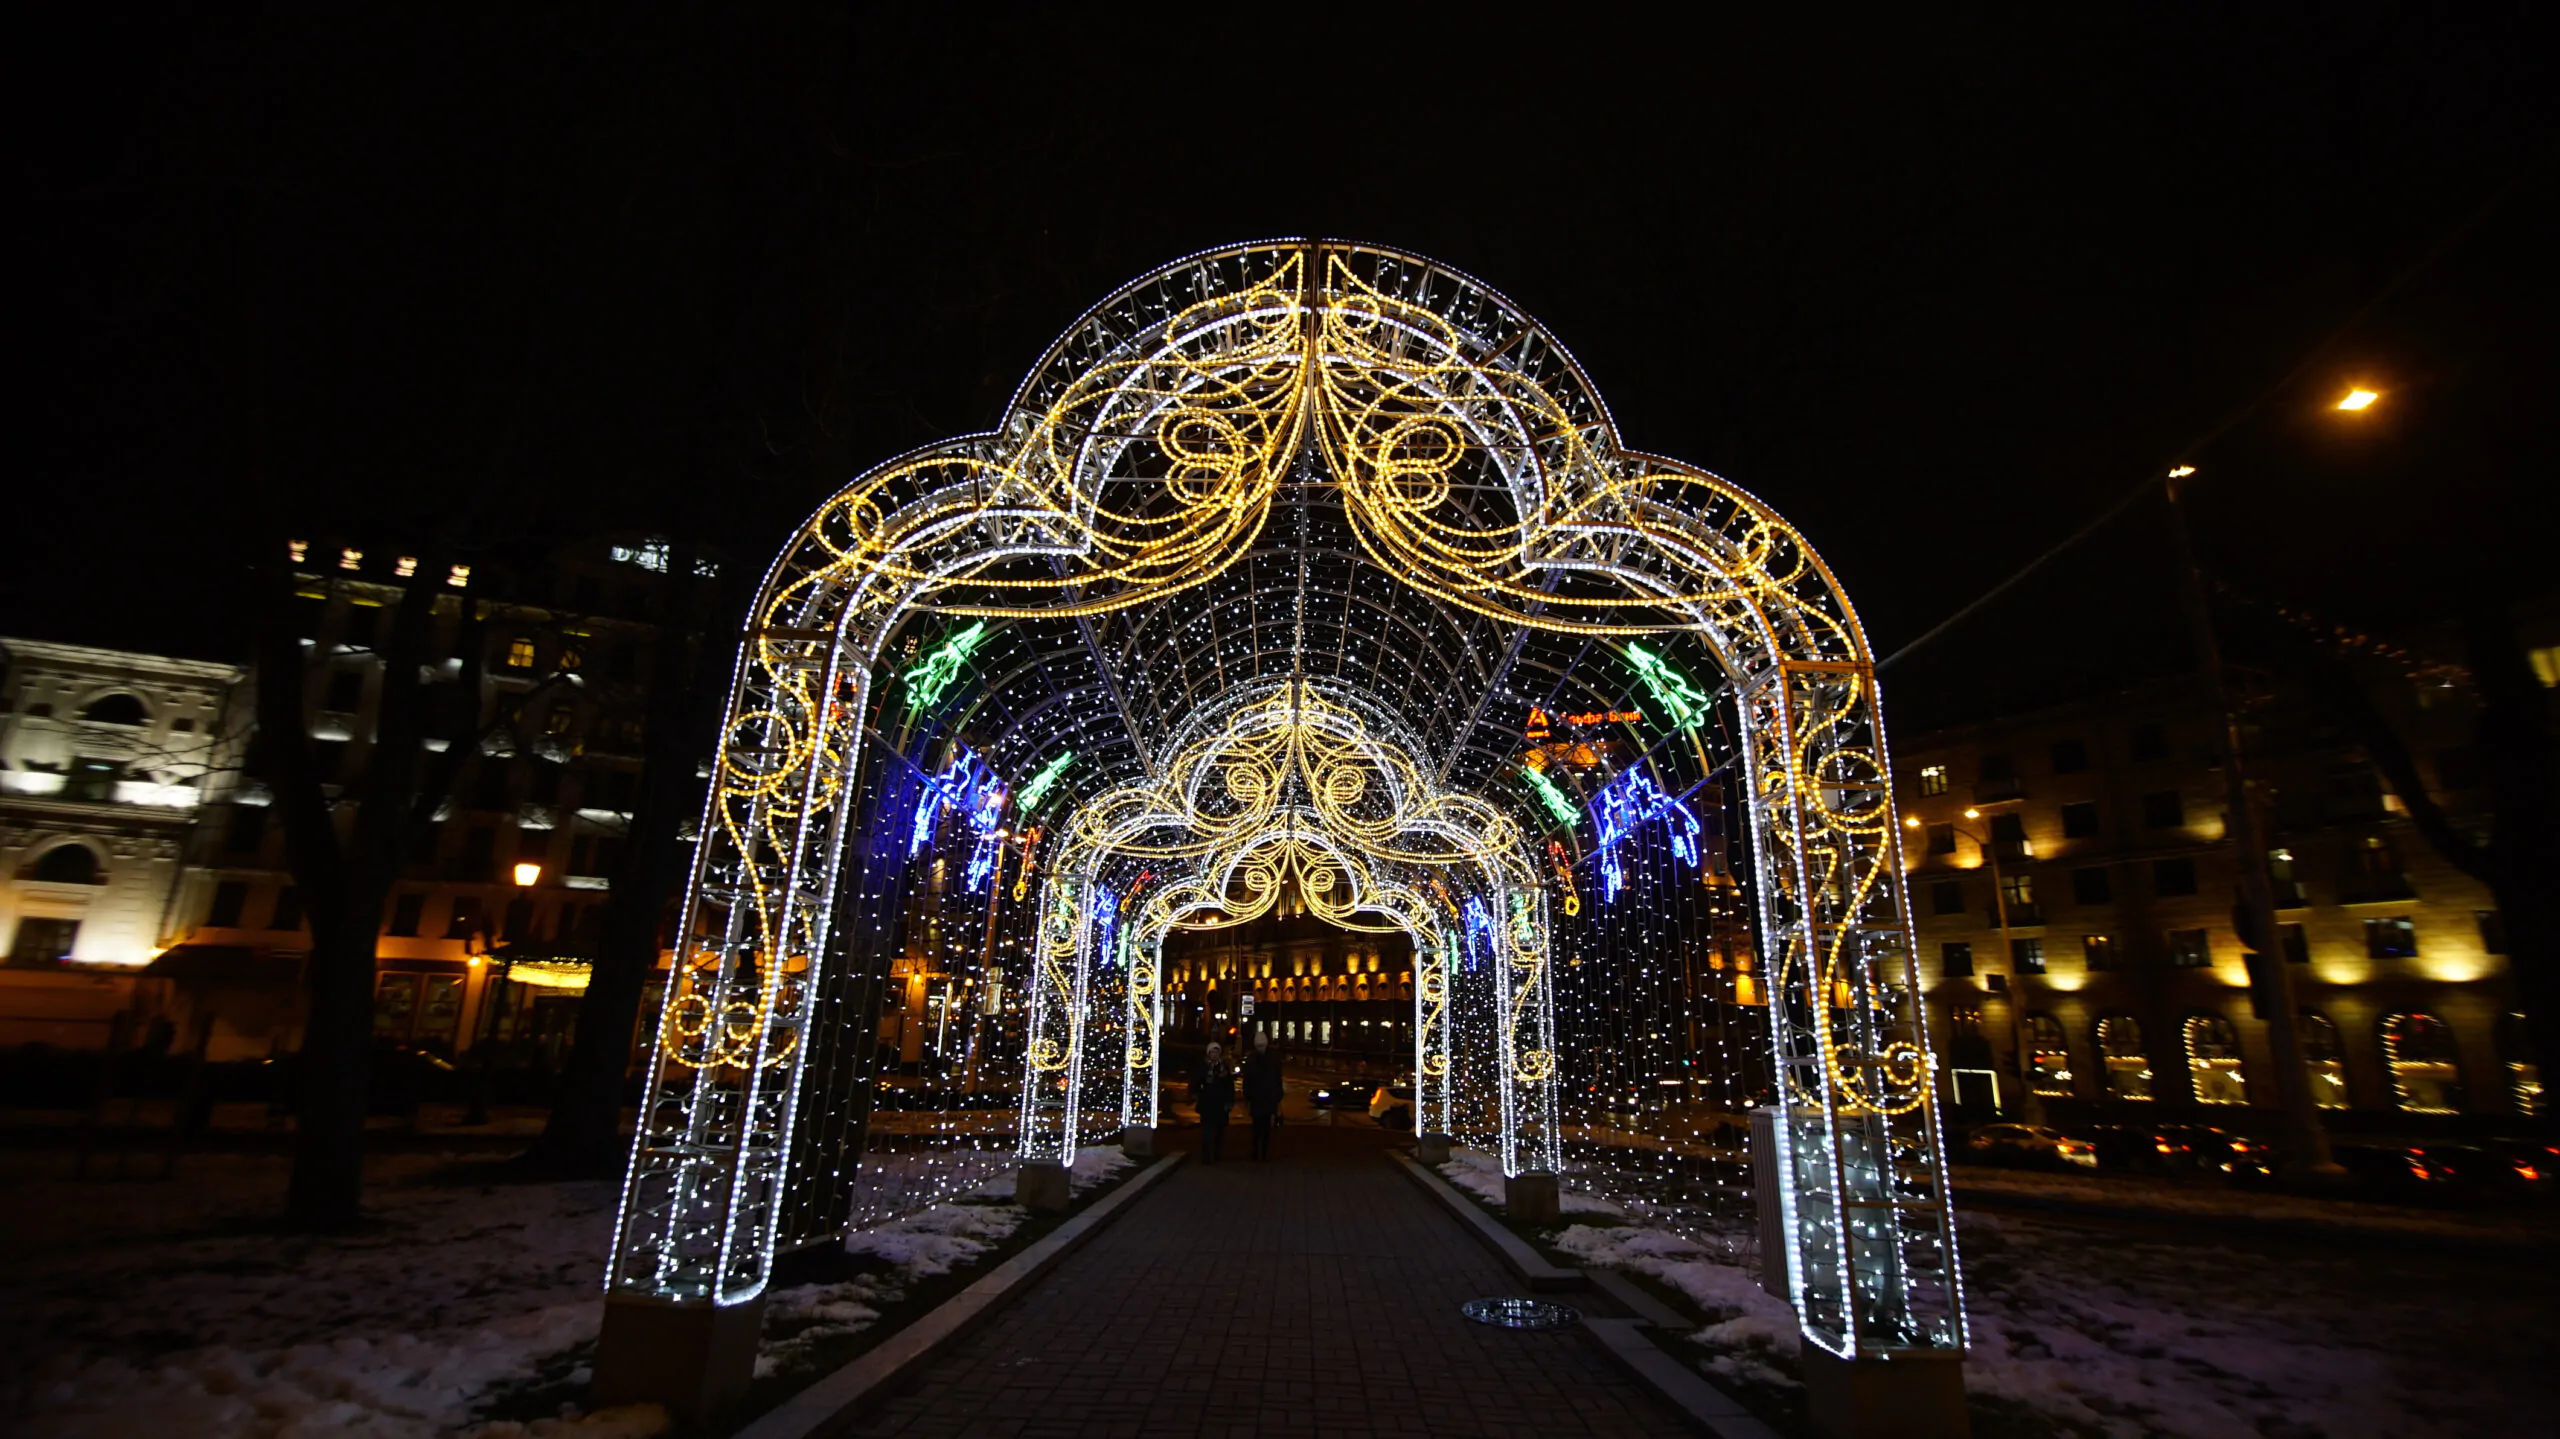 Подсветку включат через две недели, но сделать атмосферные снимки можно уже сейчас. Репортаж: как Минск украсили к Новому году?